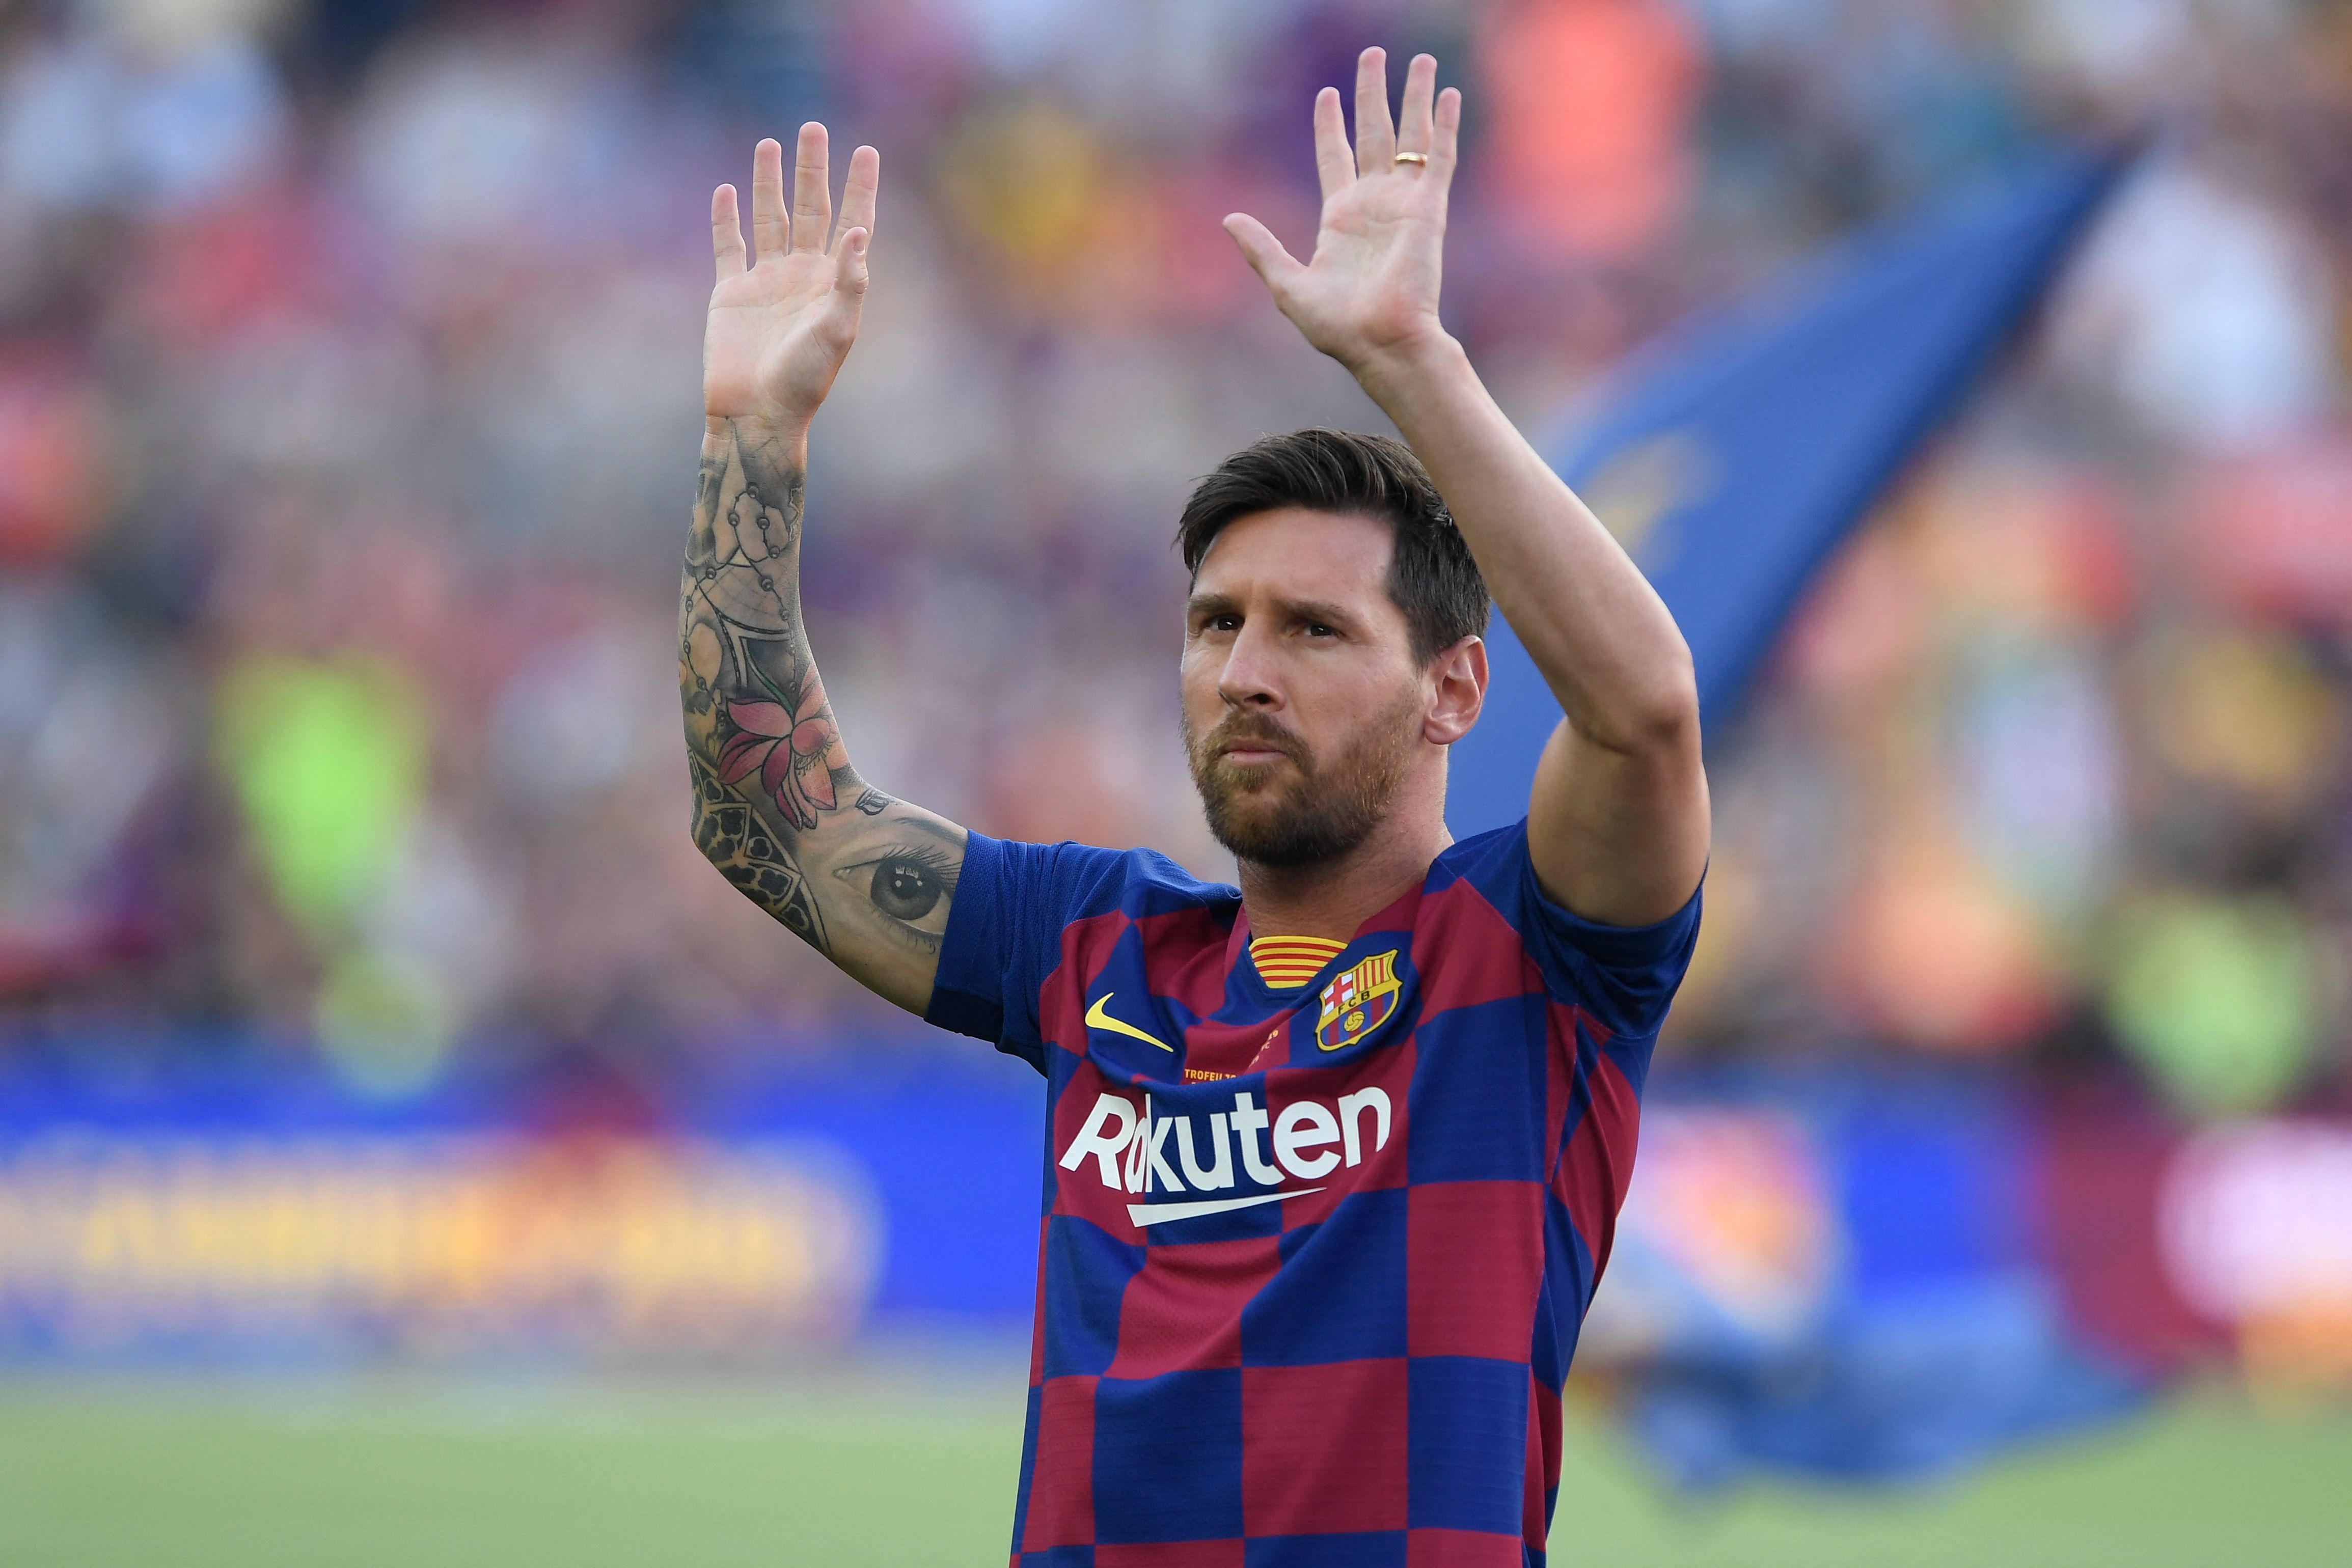 El FC Barcelona ha comunicado en sus redes sociales que el jugador argentino Leo Messi no continuará siendo jugador de la entidad.  (Foto Prensa Libre: AFP)

